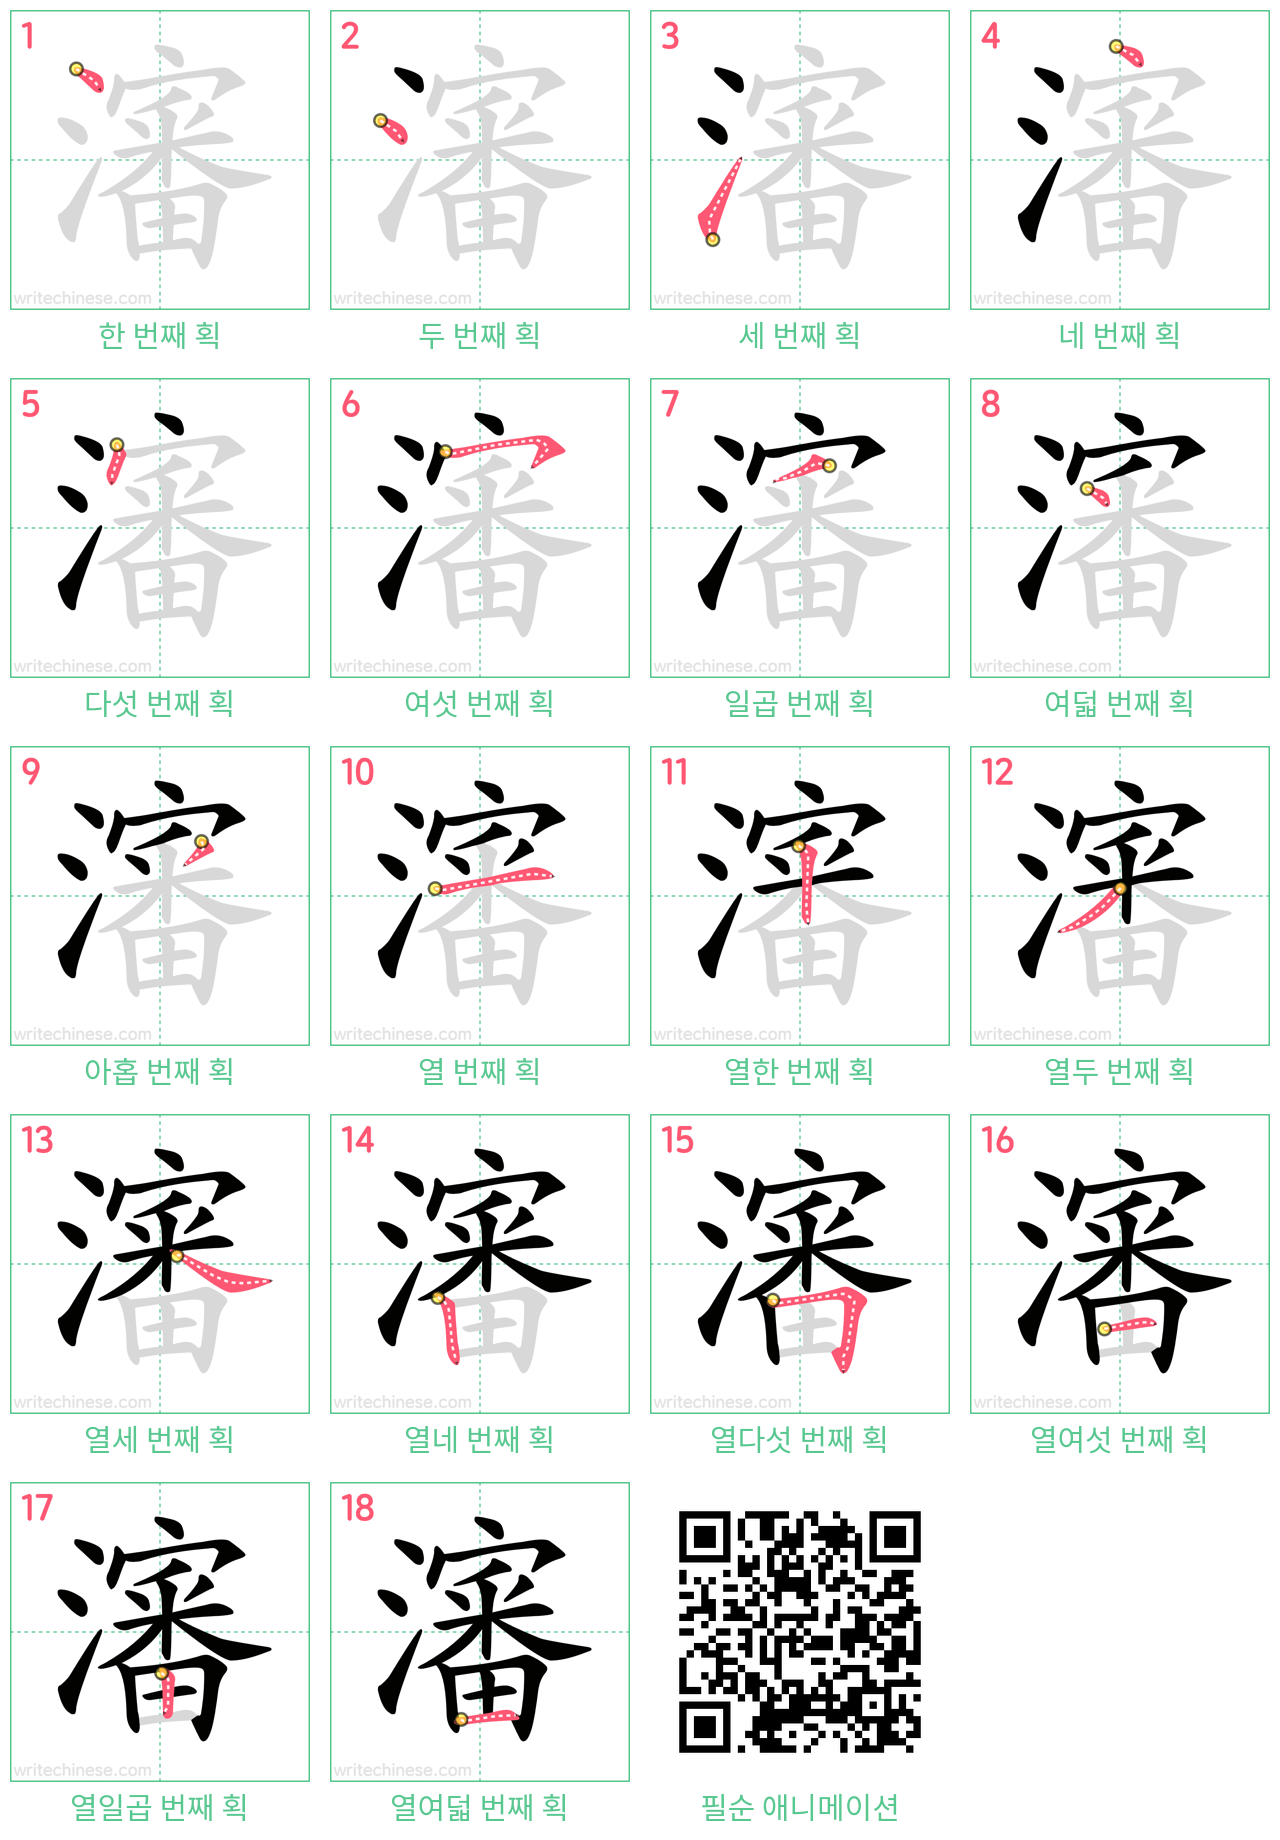 瀋 step-by-step stroke order diagrams